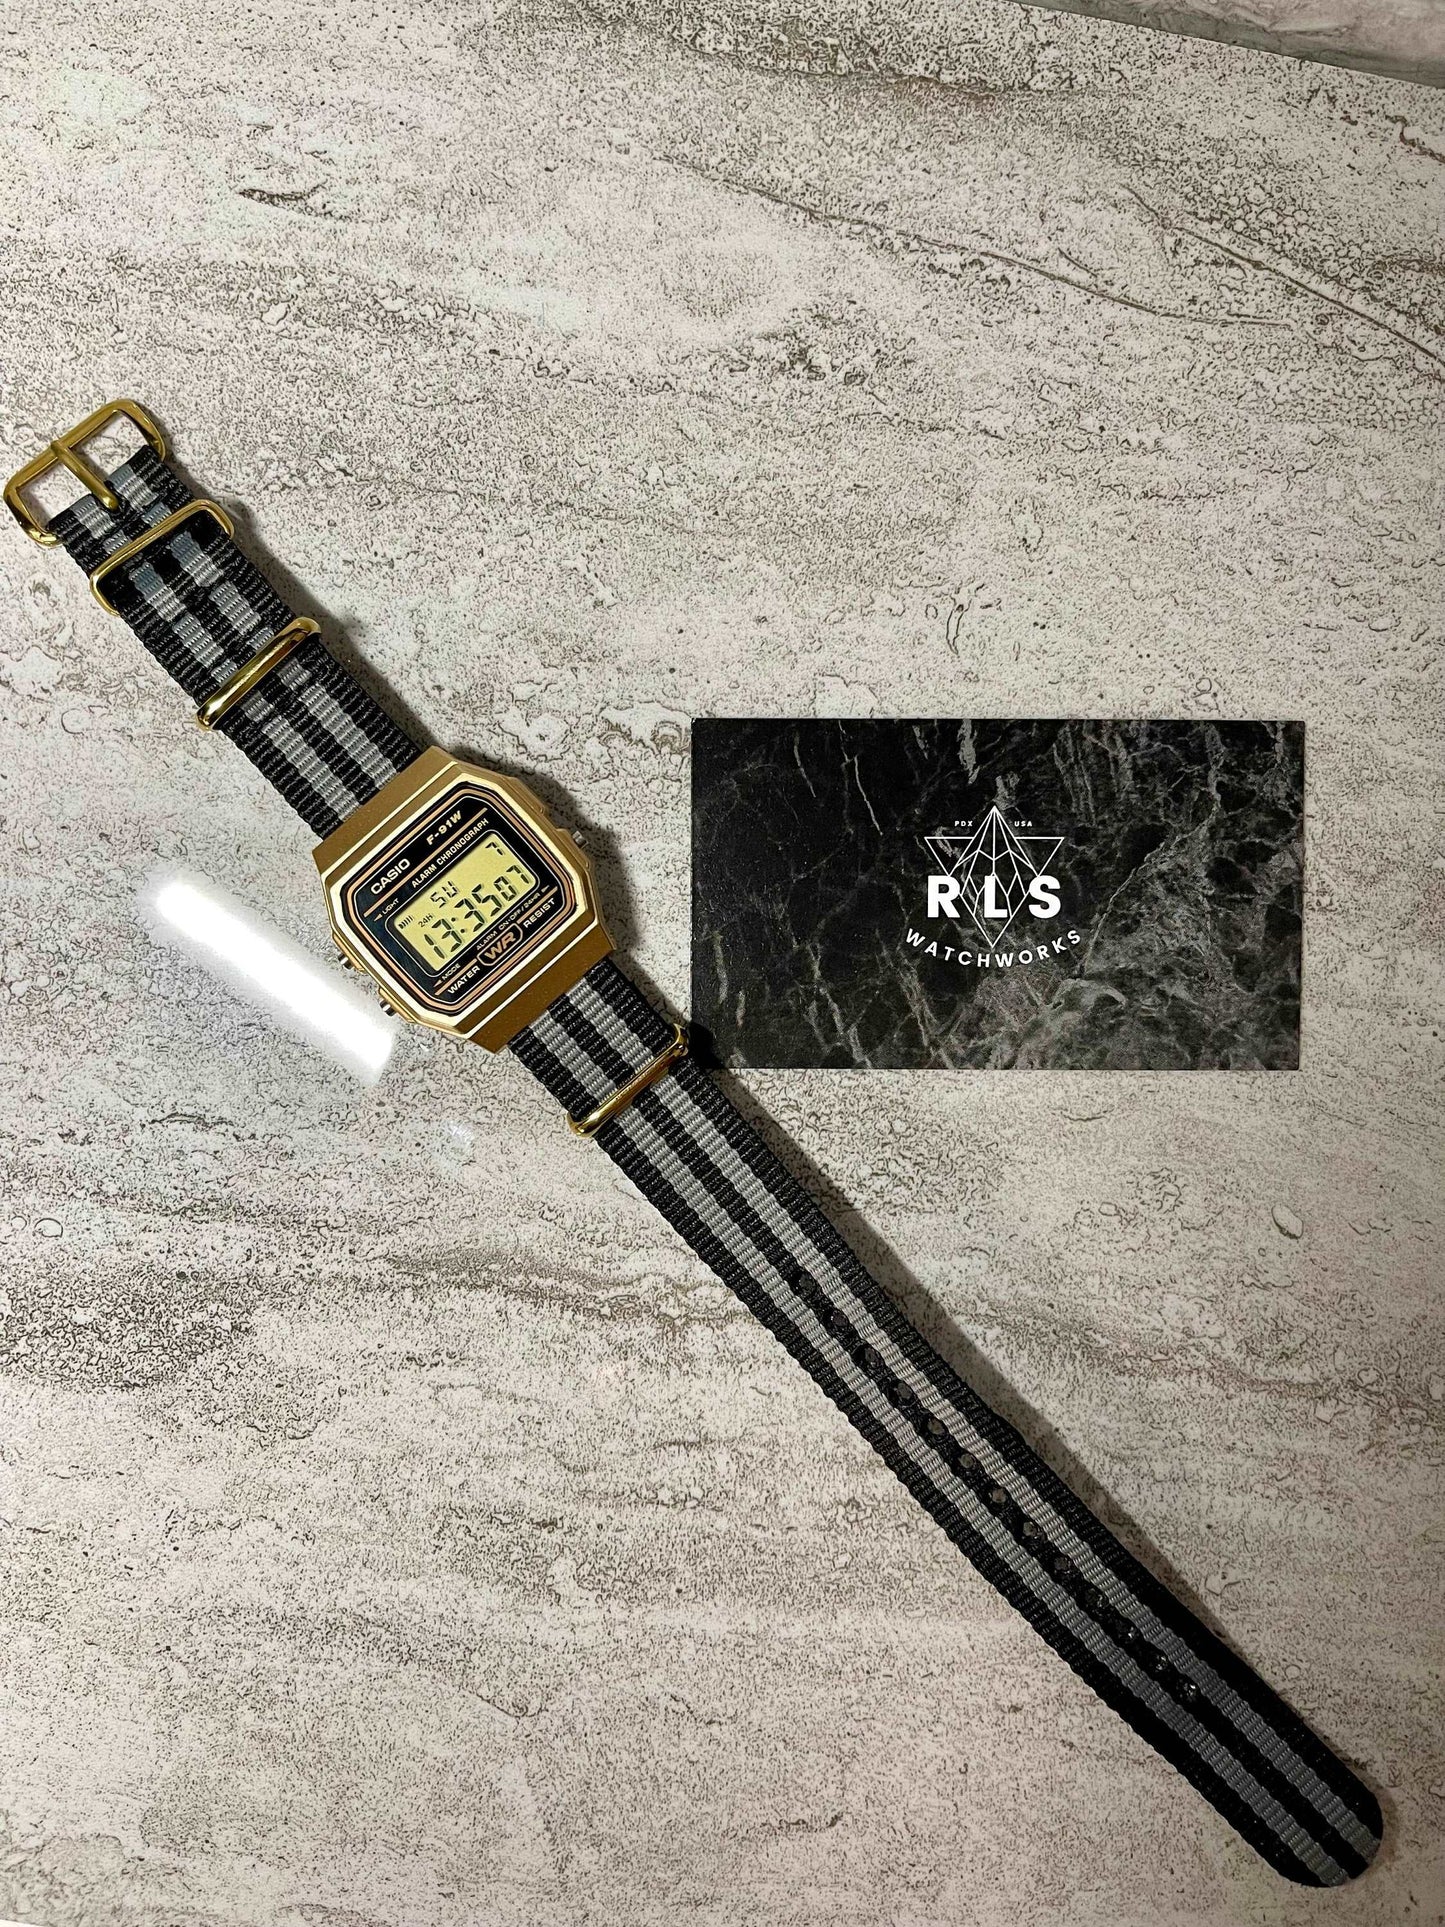 Custom Gold Casio Watch on Black/Grey Strap 